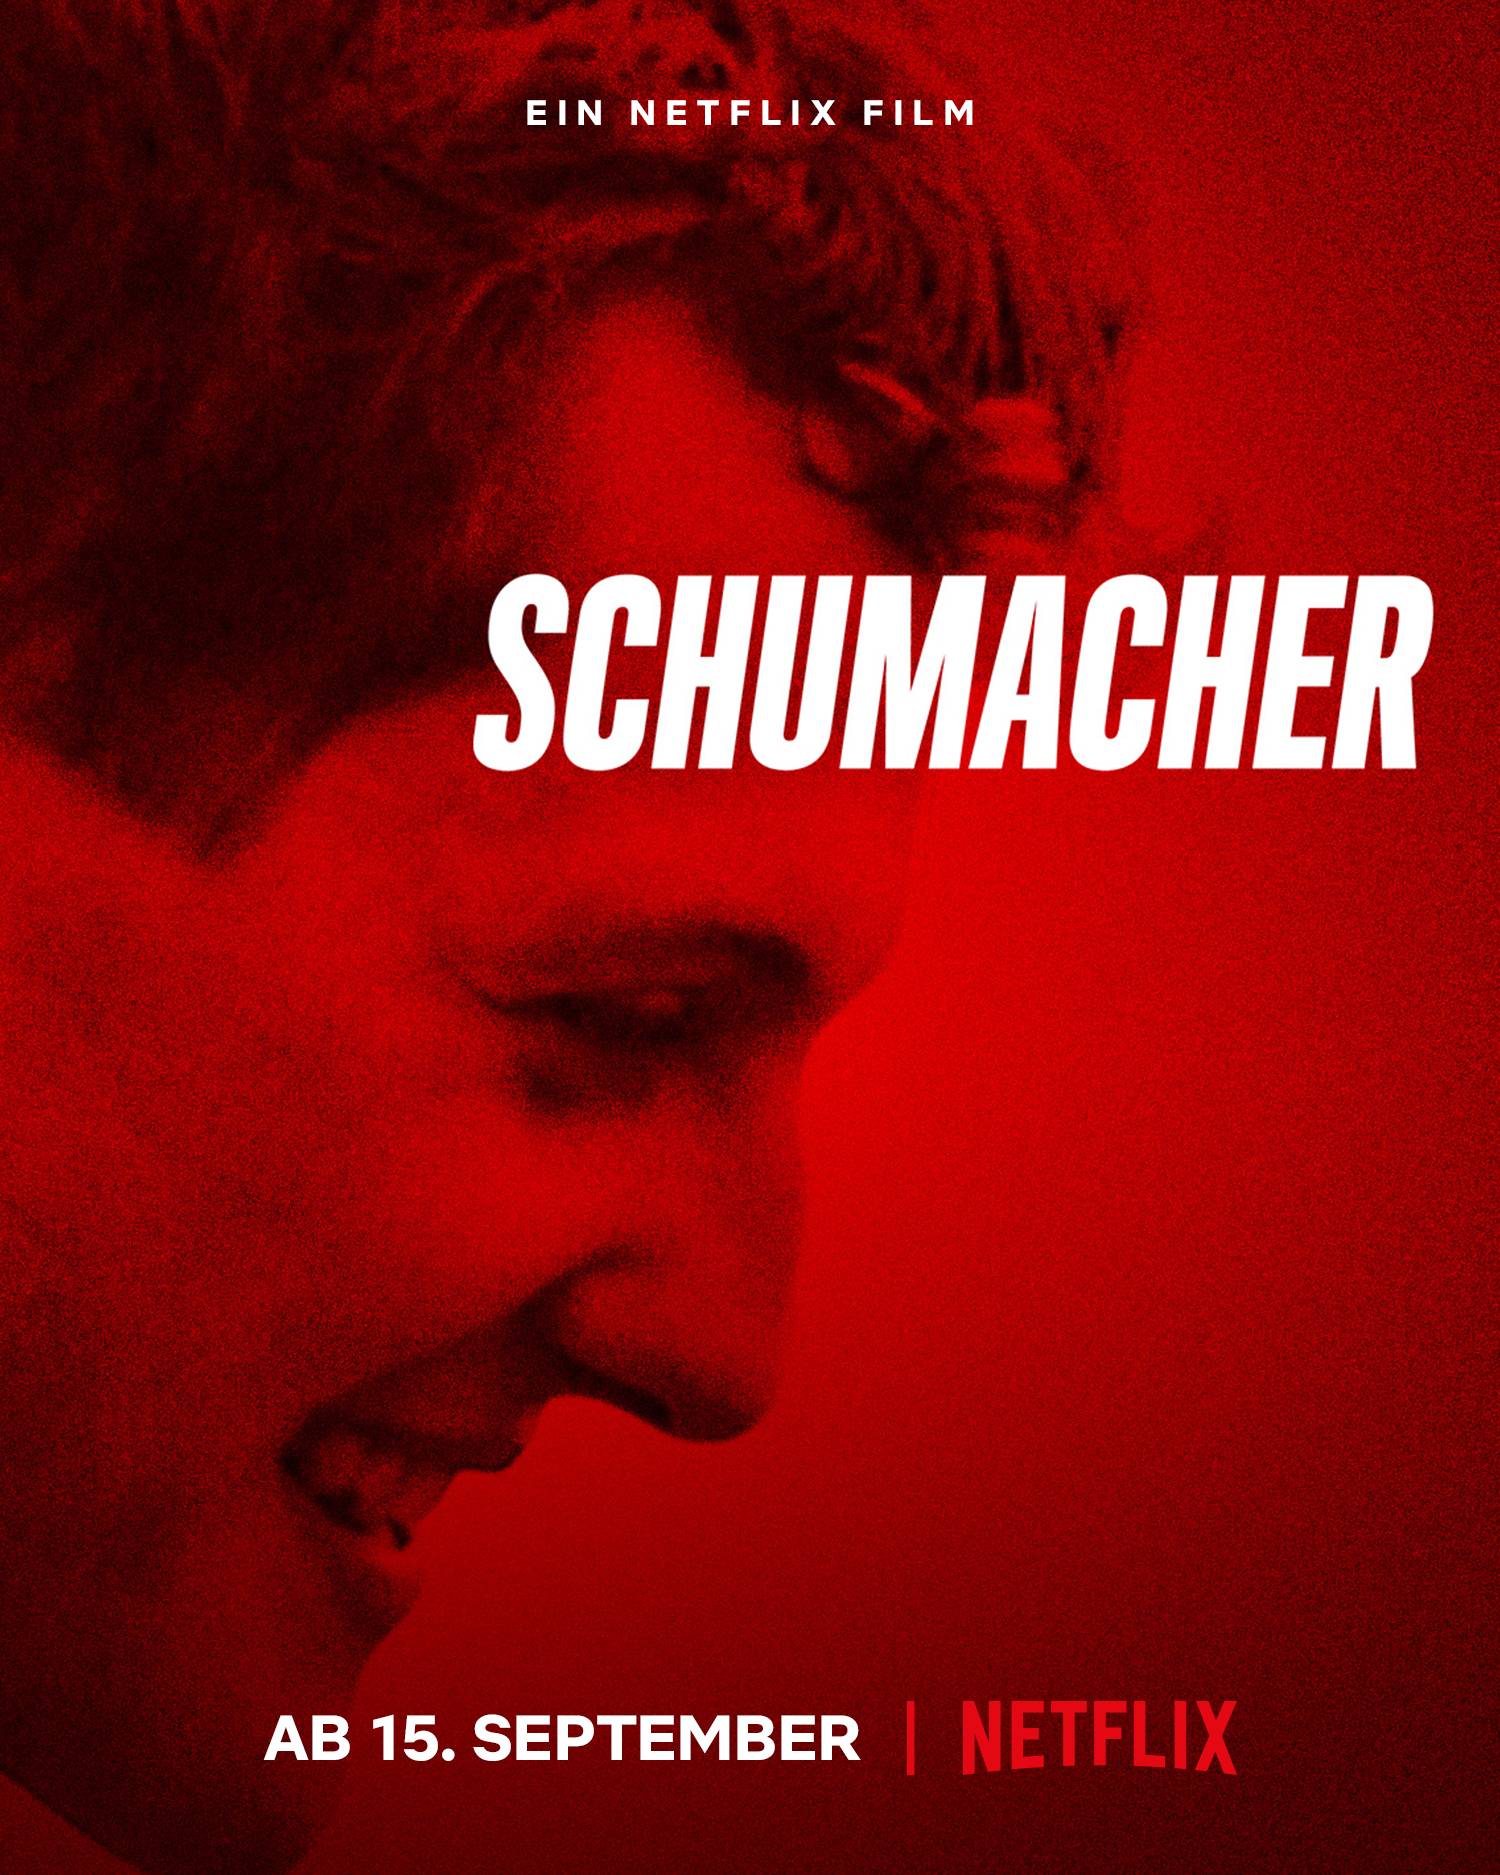 שומאכר - Schumacher - תרגום מובנה - איכות 720p